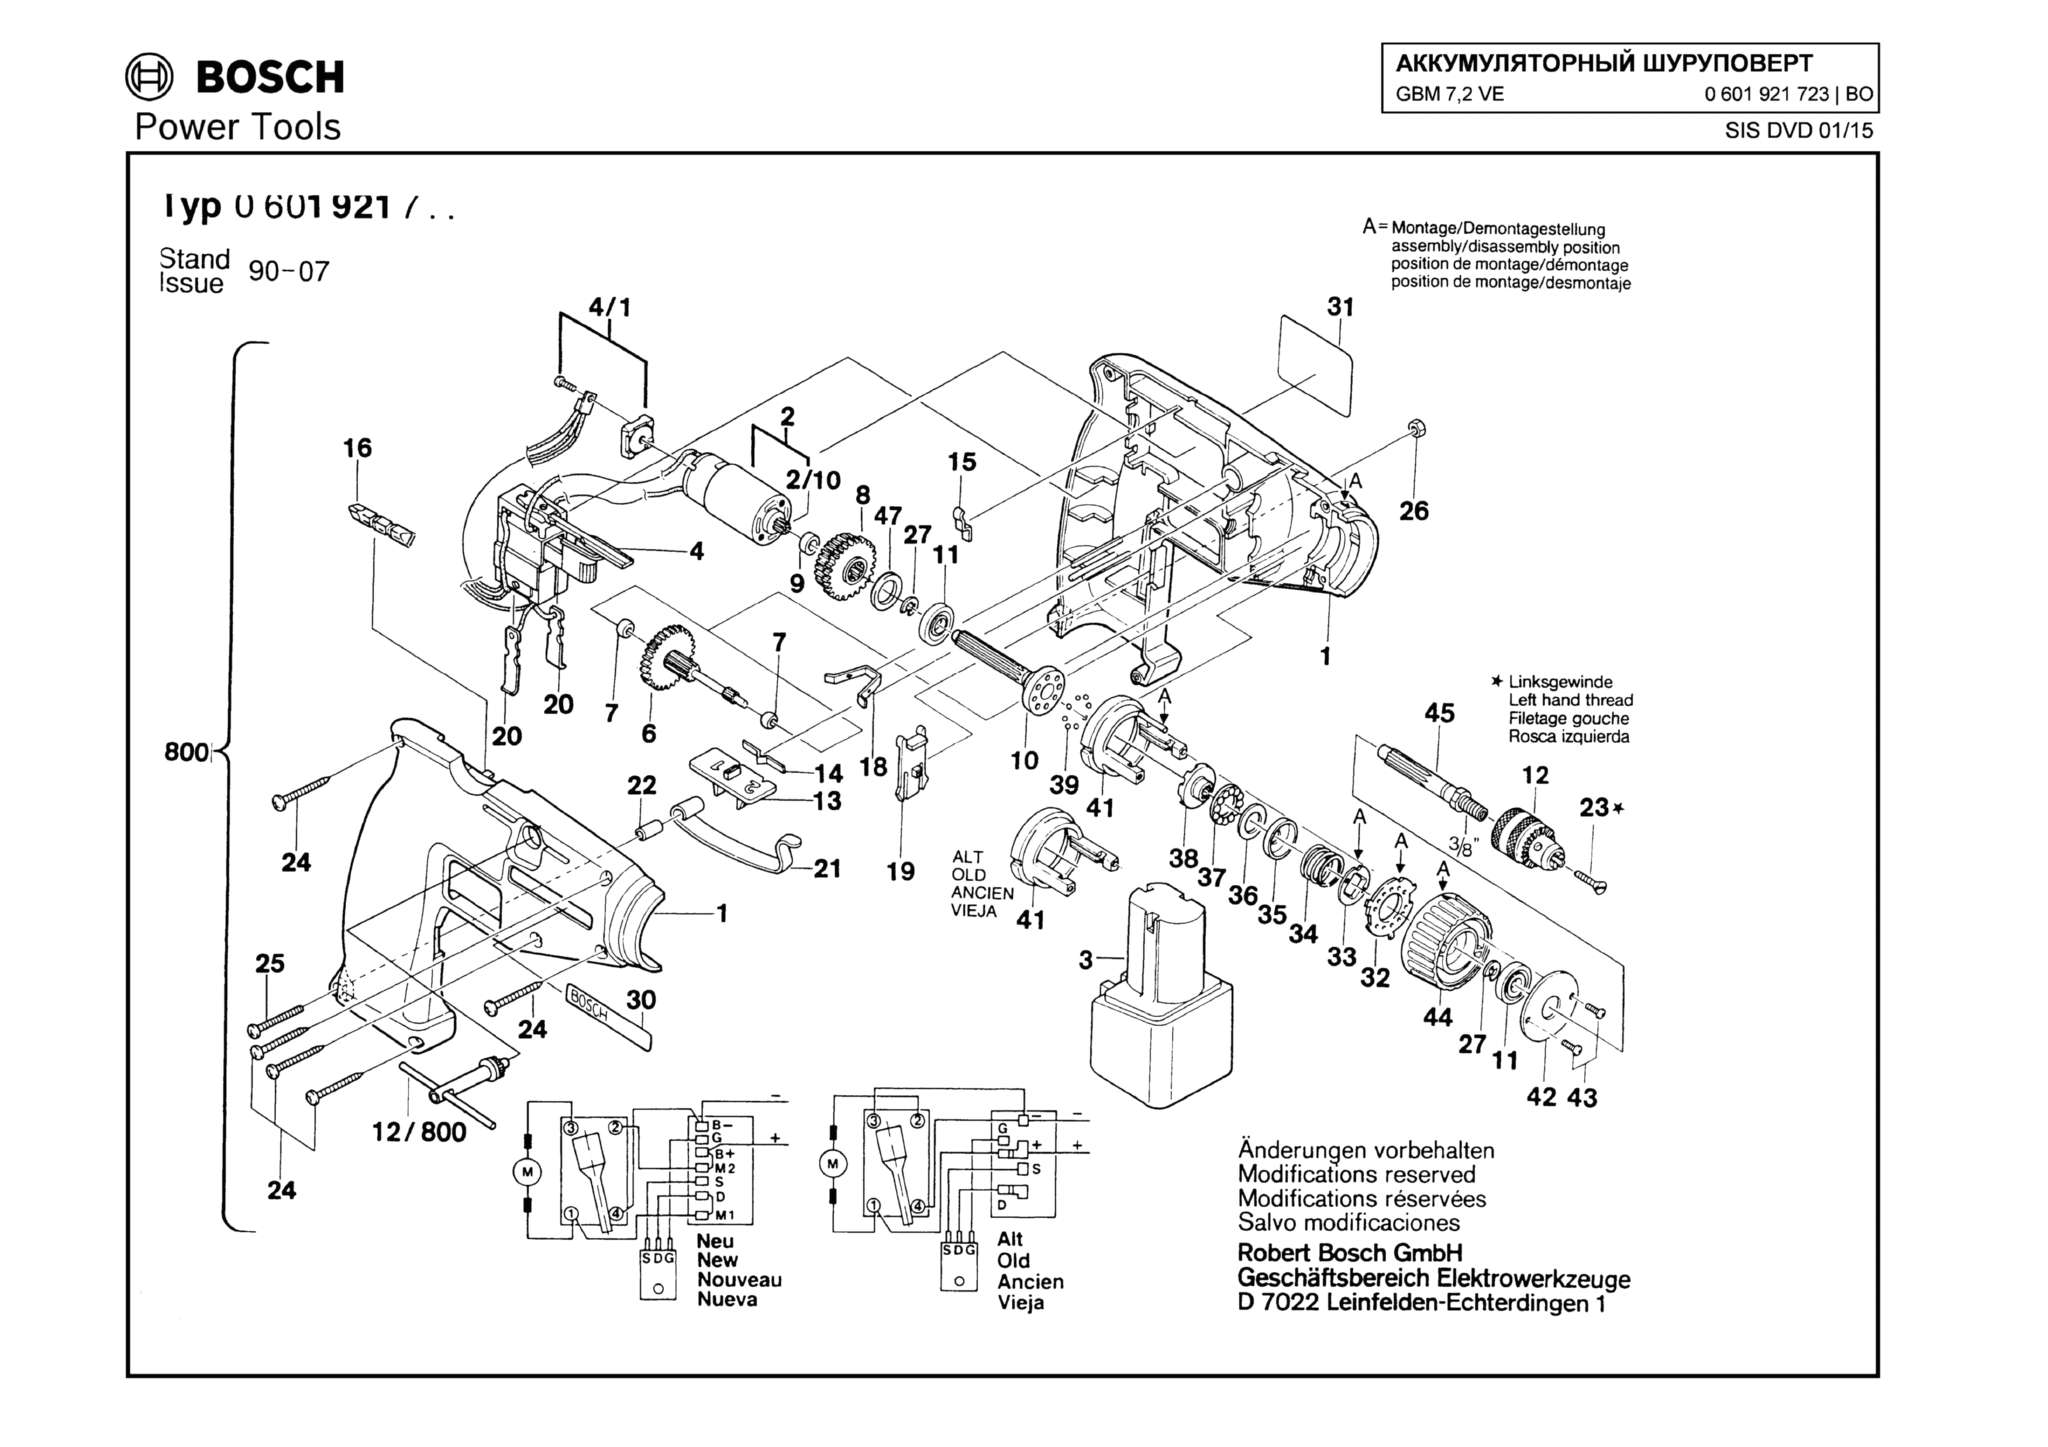 Запчасти, схема и деталировка Bosch GBM 7,2 VE (ТИП 0601921723)